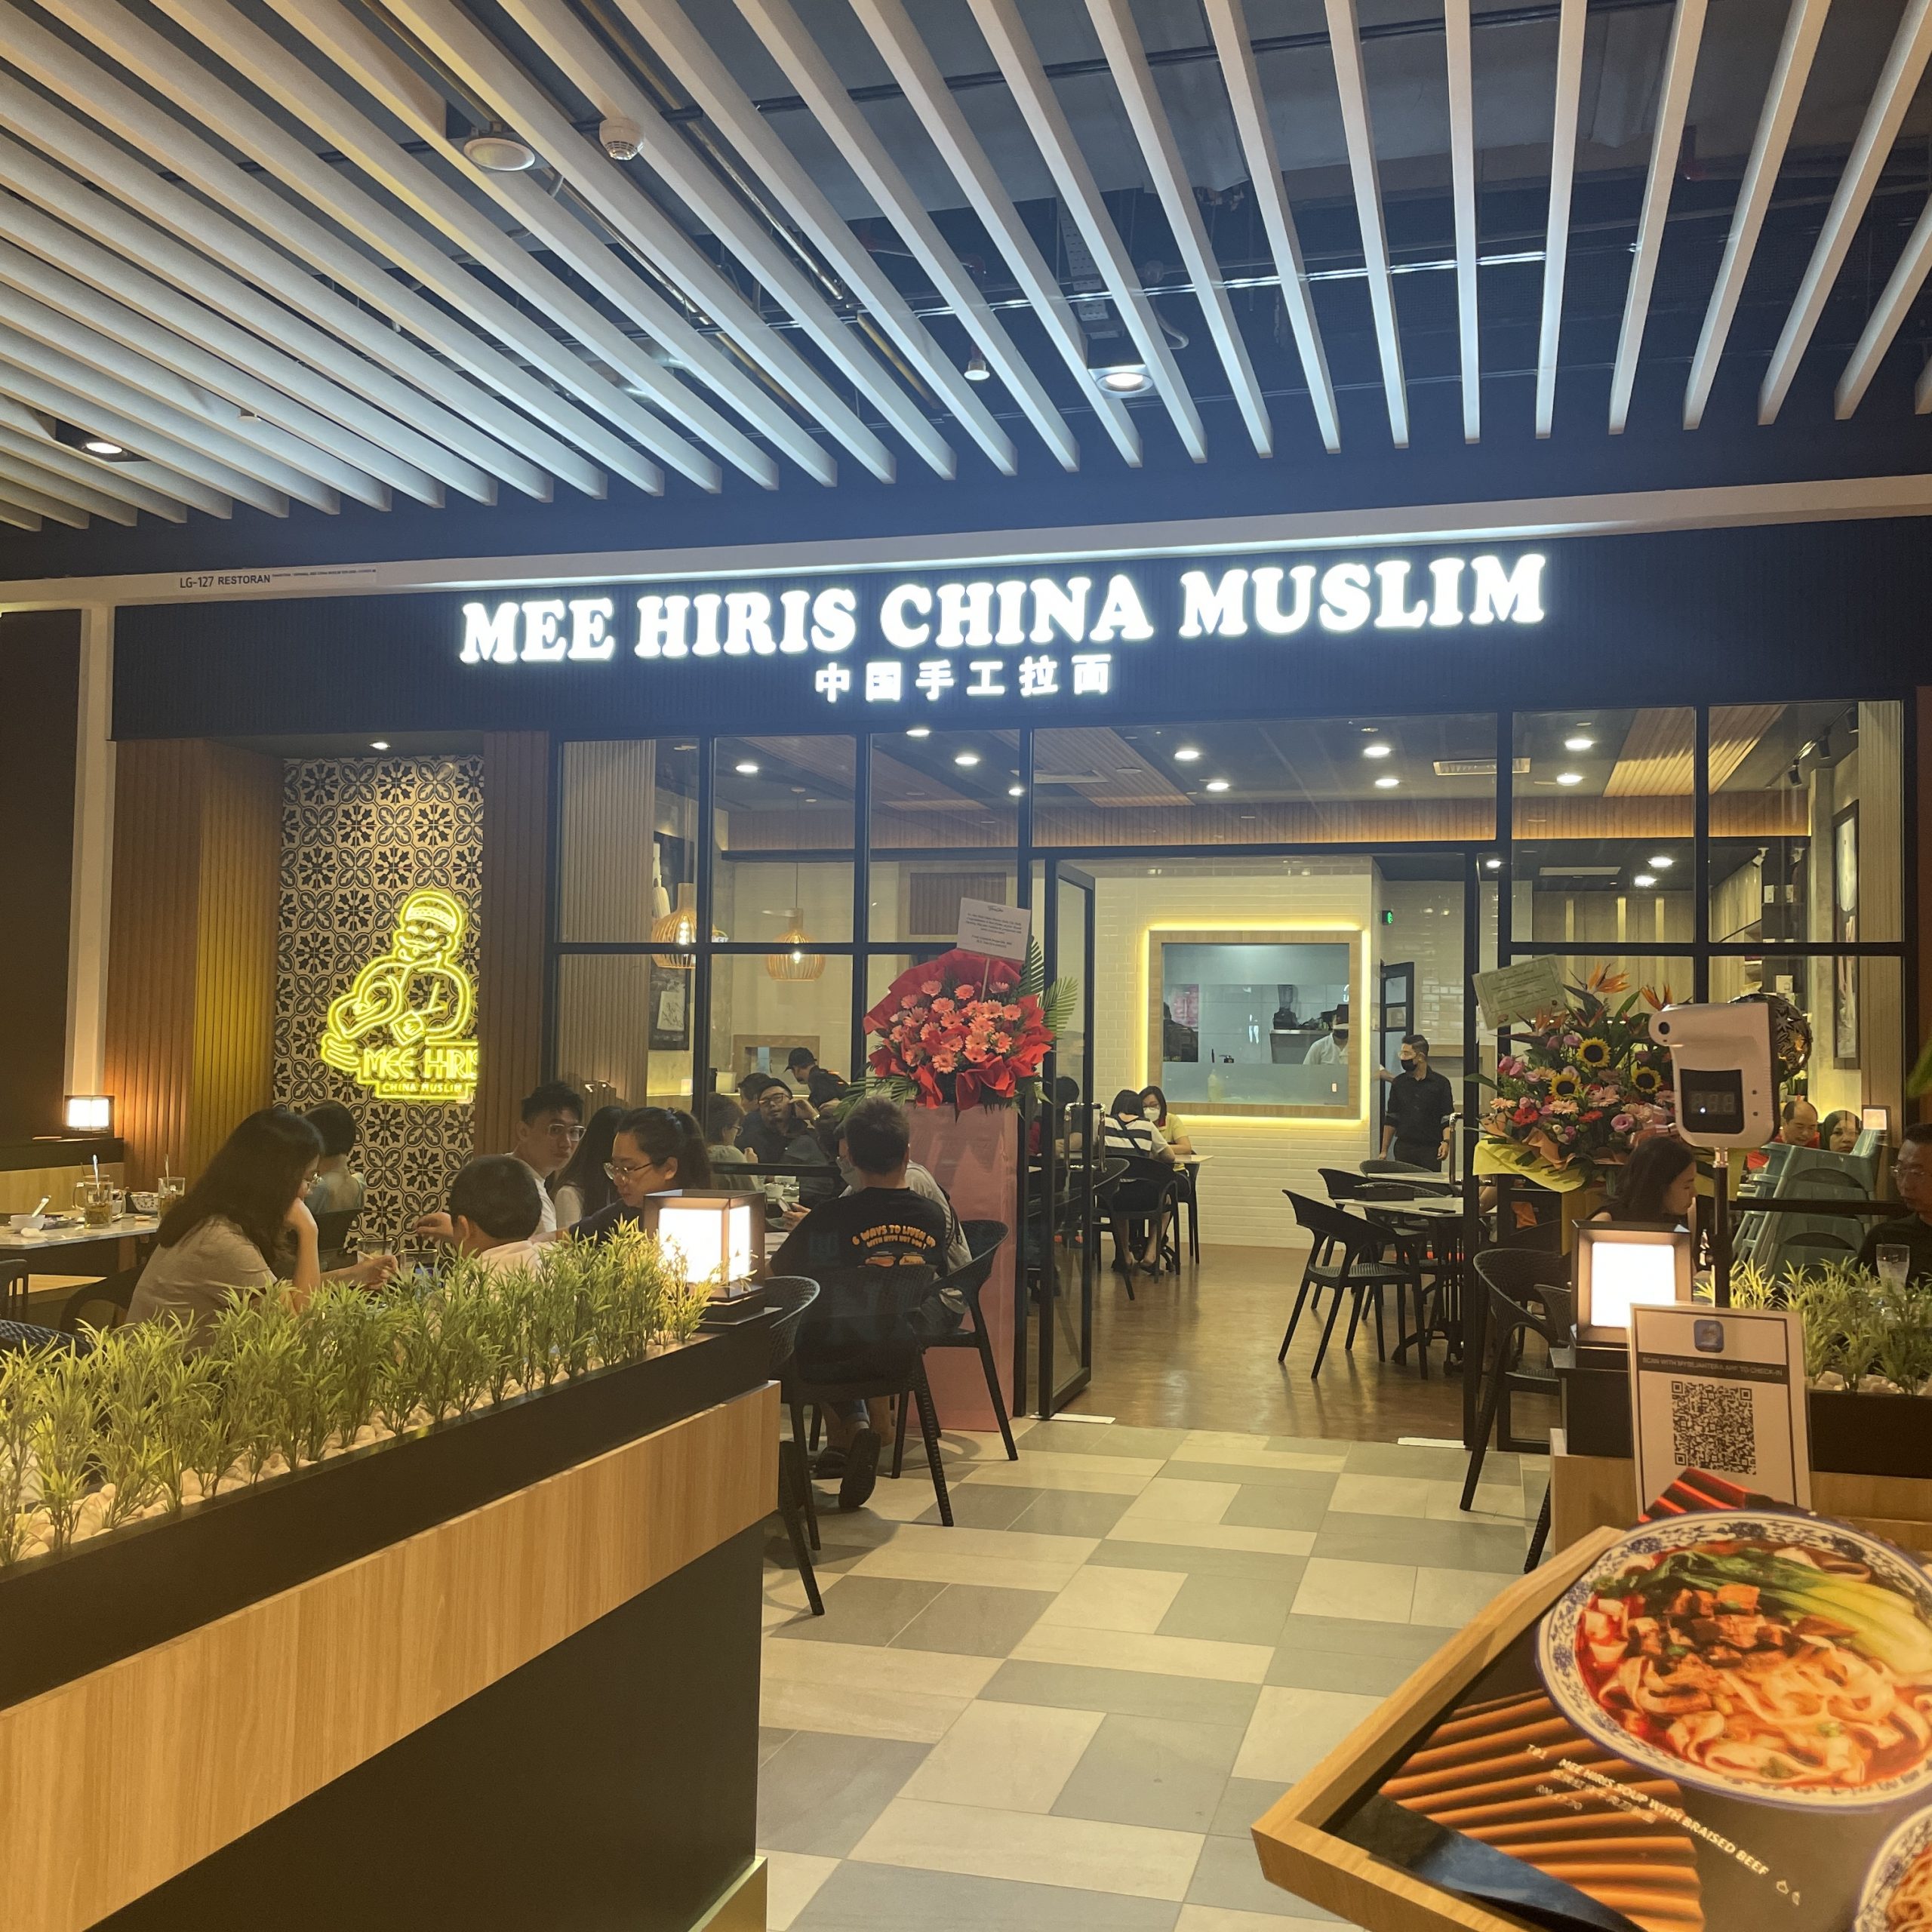 Mee hiris china muslim